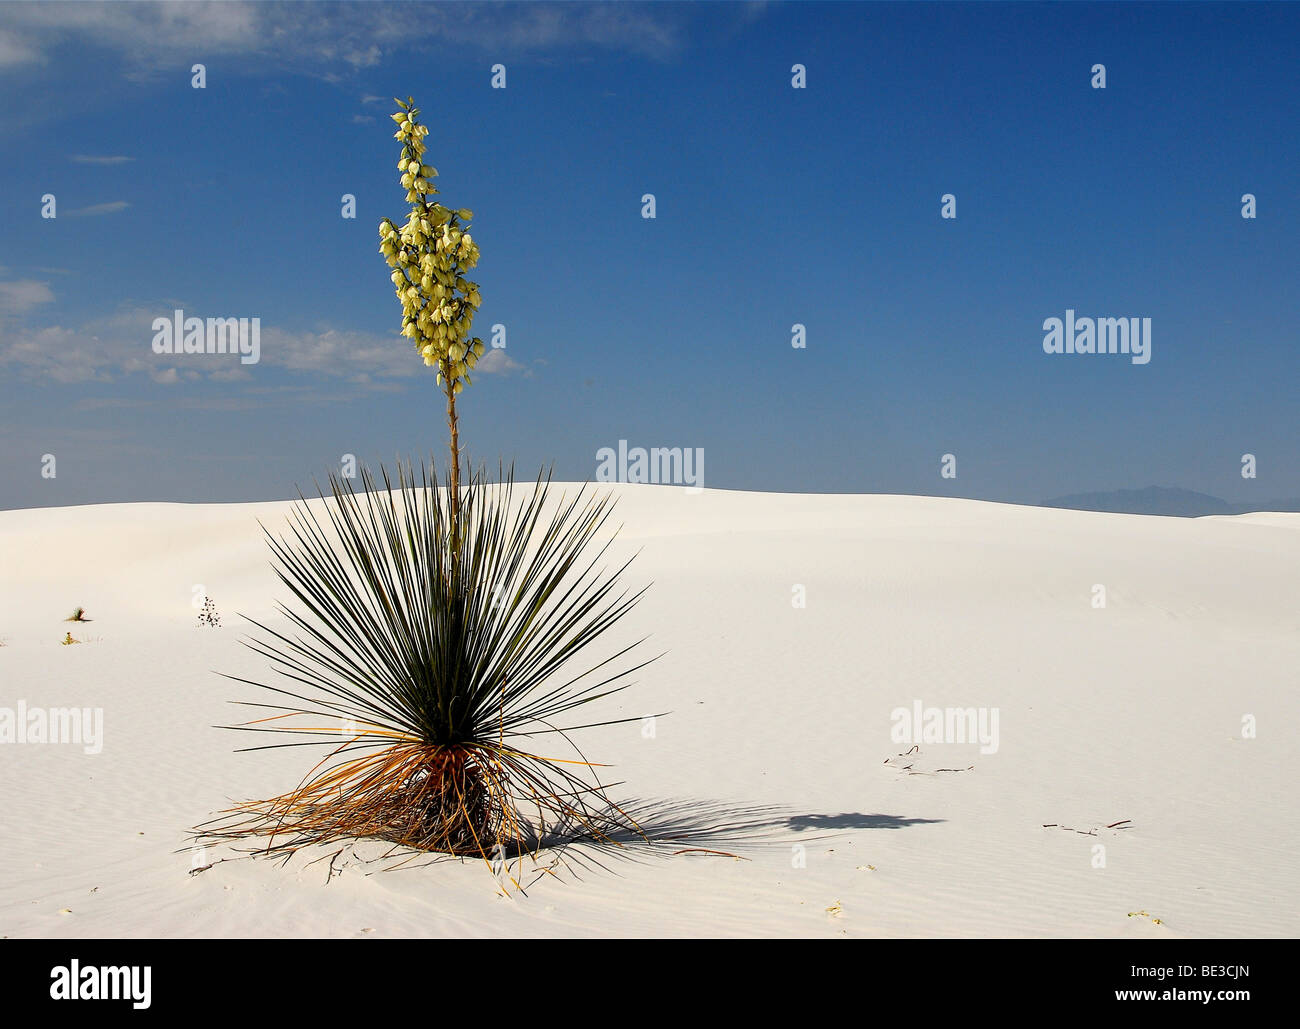 Floreciente del árbol de jabón la yuca (Yucca elata) en el Parque Nacional de White Sands, Nuevo México, Estados Unidos, América del Norte Foto de stock